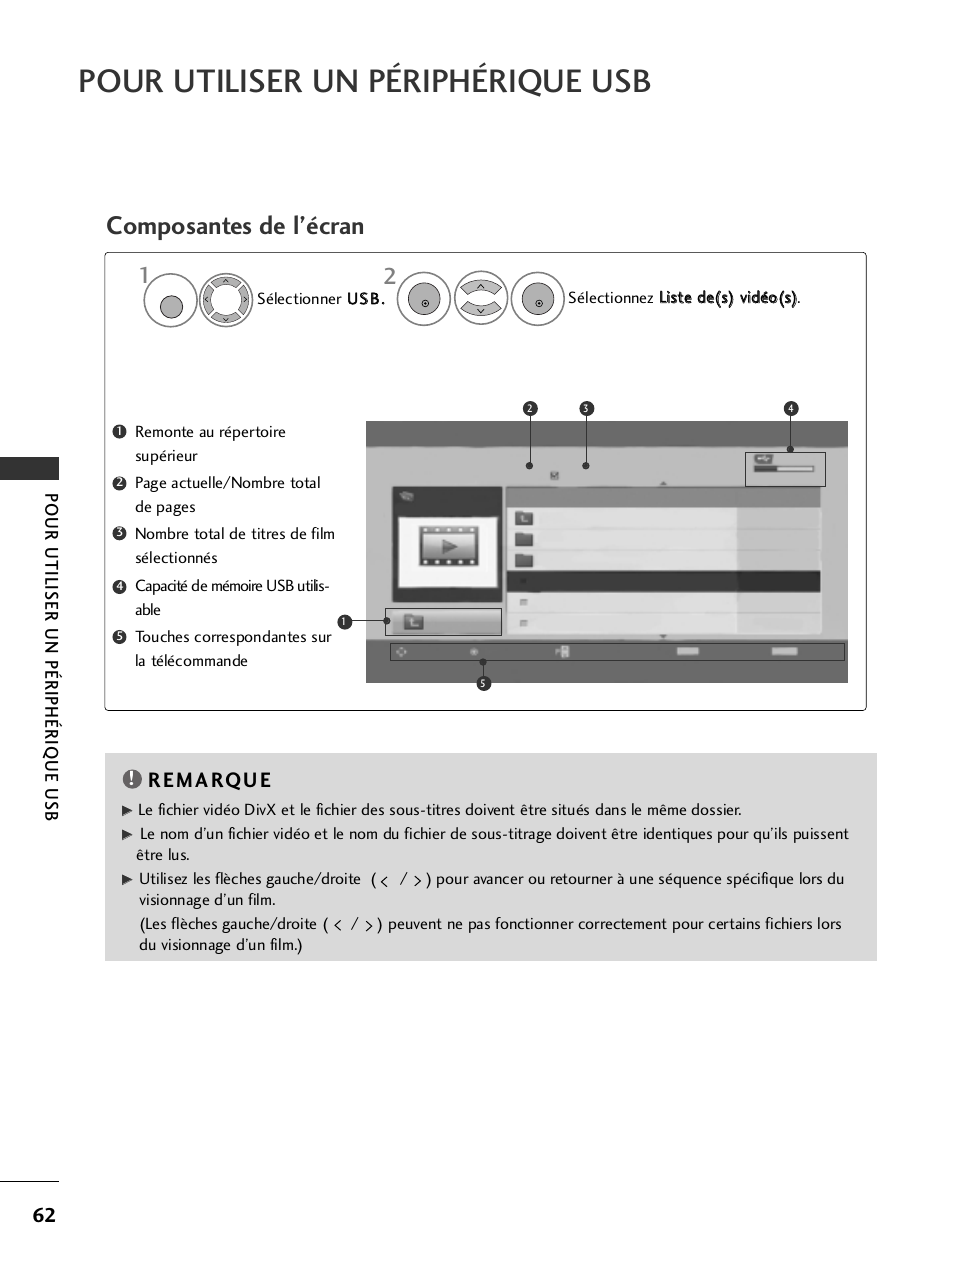 Pour utiliser un périphérique usb, Composantes de l’écran, Liste de(s) vidéo(s) | LG 50PQ6000 Manuel d'utilisation | Page 64 / 124